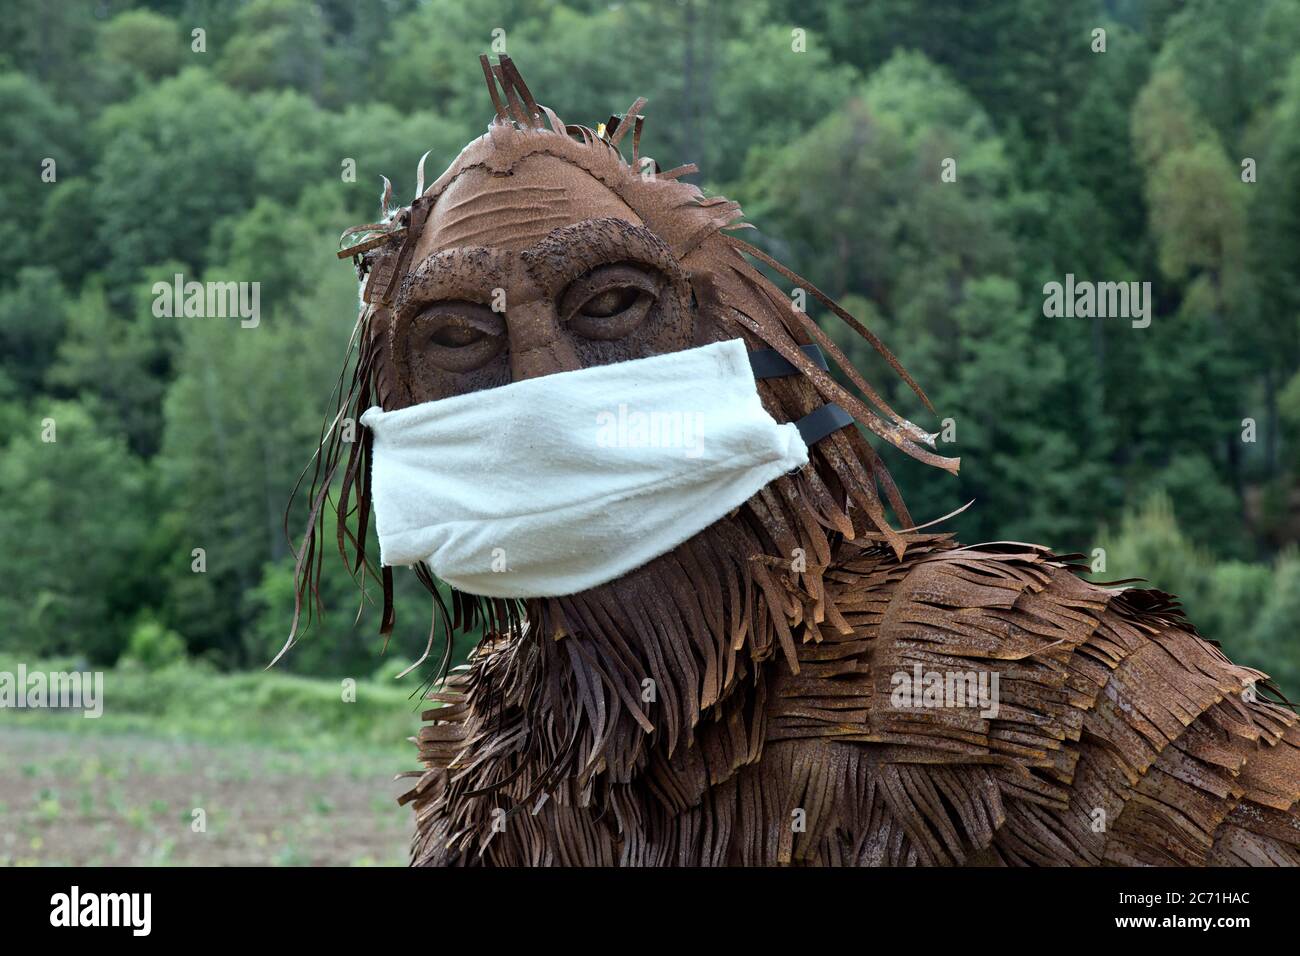 Bigfoot portant le masque antivirus COVID-19, bord de forêt, folklore nord-américain, Bigfoot ou Sasquatch sont dit être poilu, debout marchant comme un singe. Banque D'Images